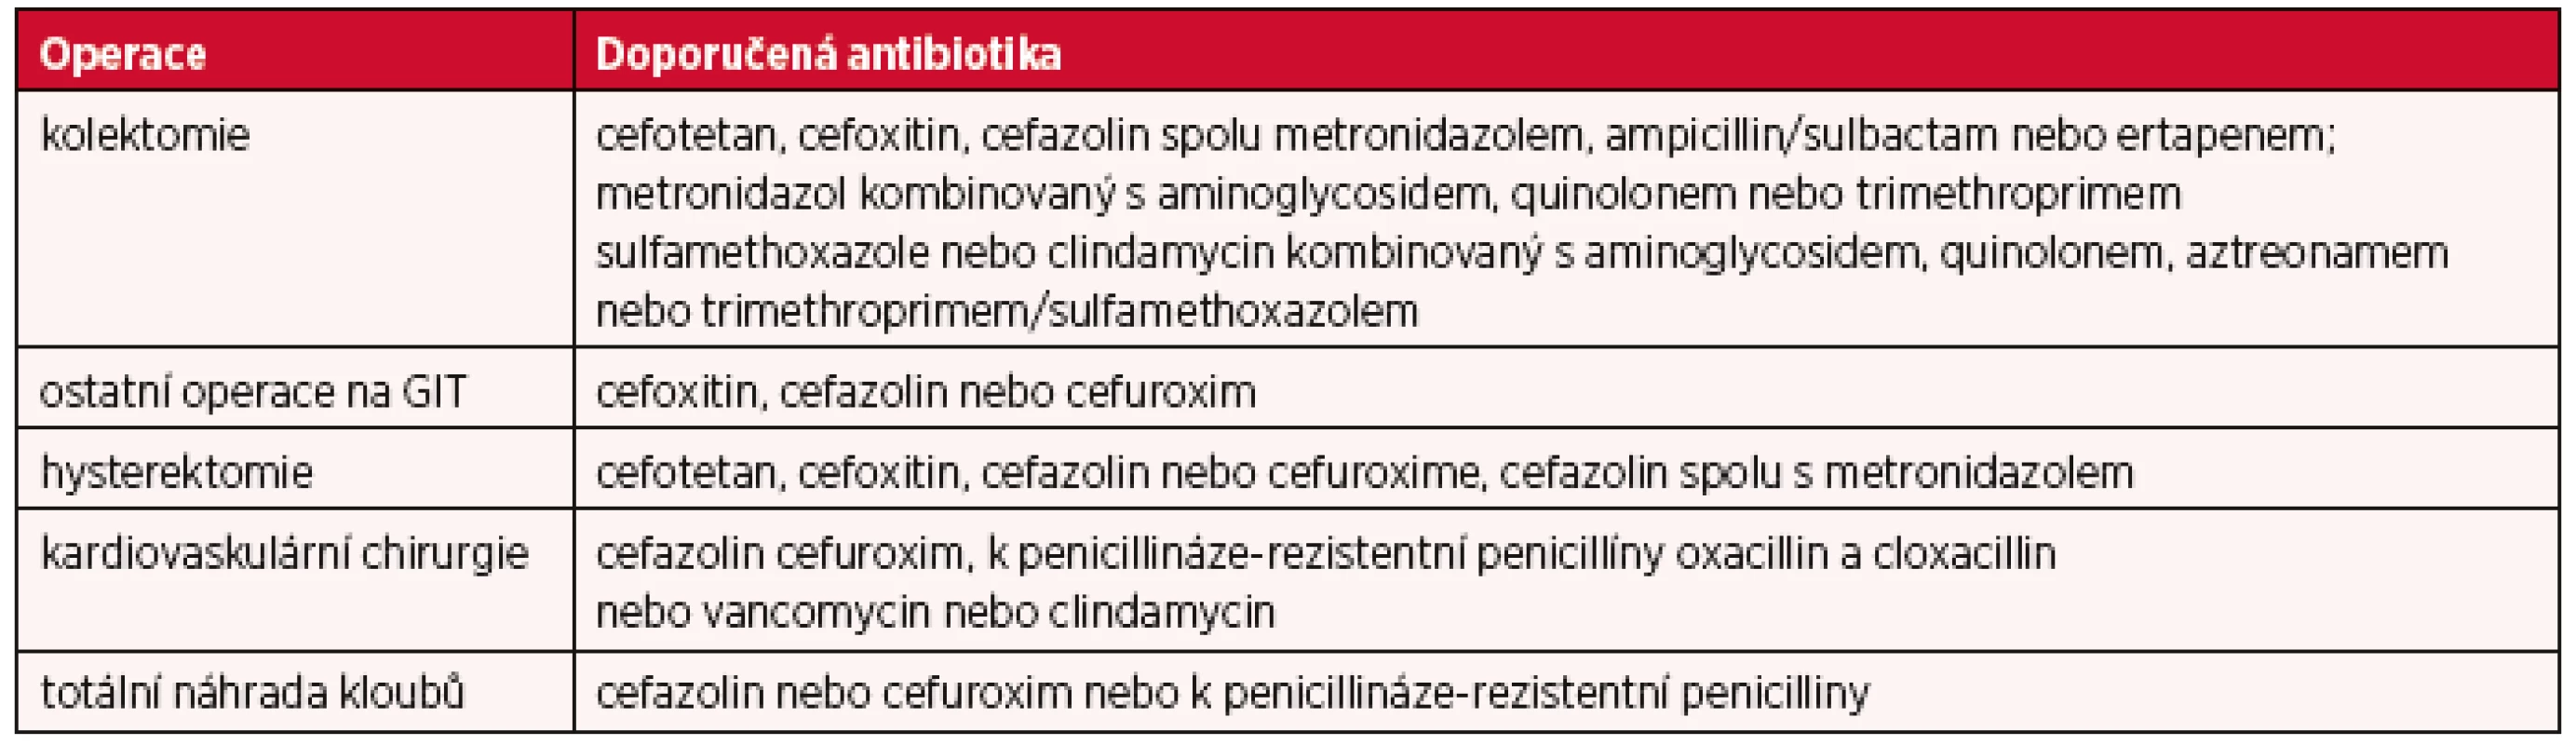 Doporučení WHO antibiotik vhodných pro profylaxi v chirurgii (3)